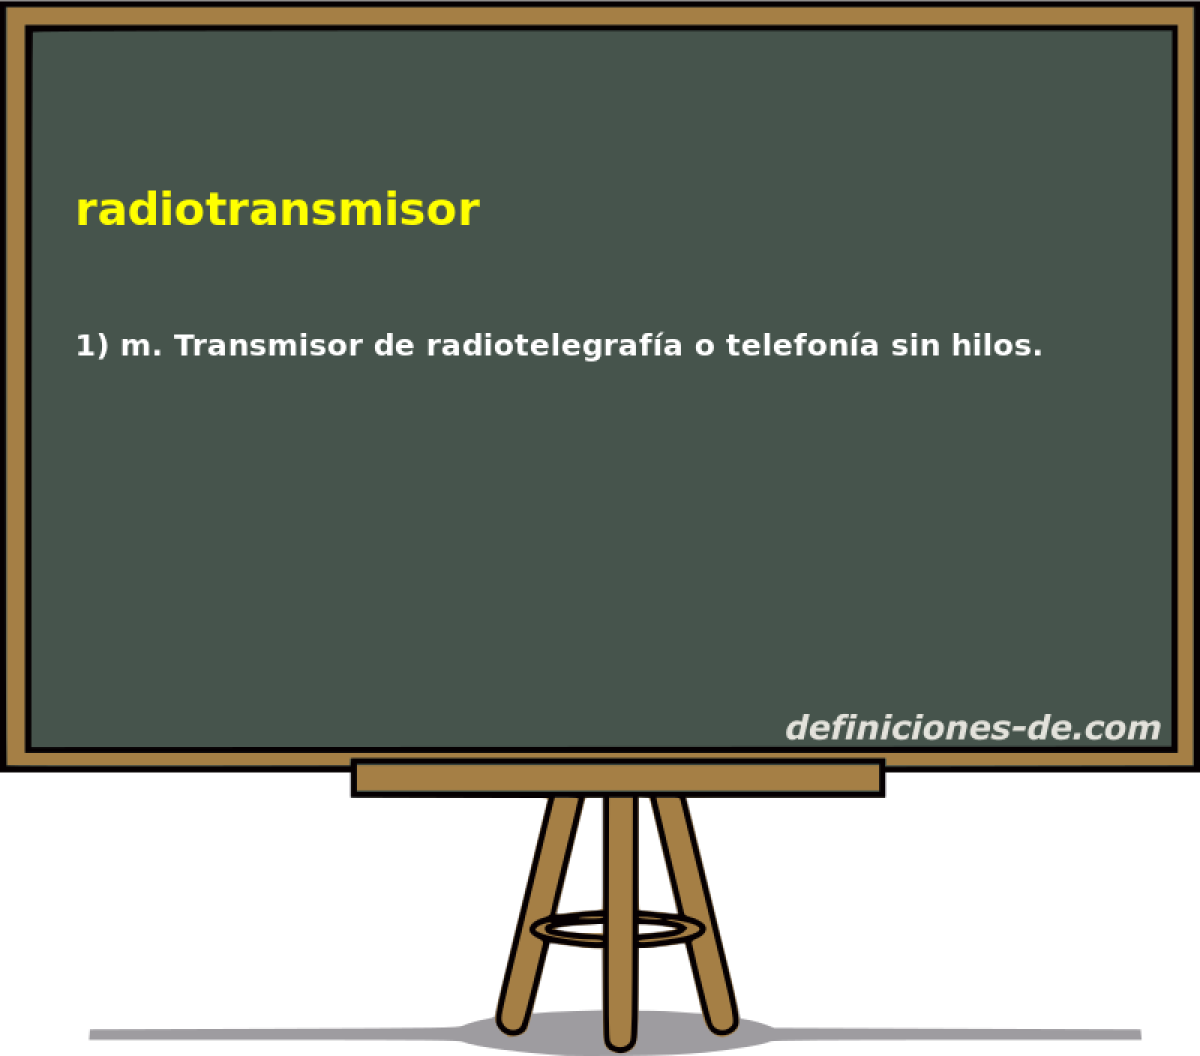 radiotransmisor 